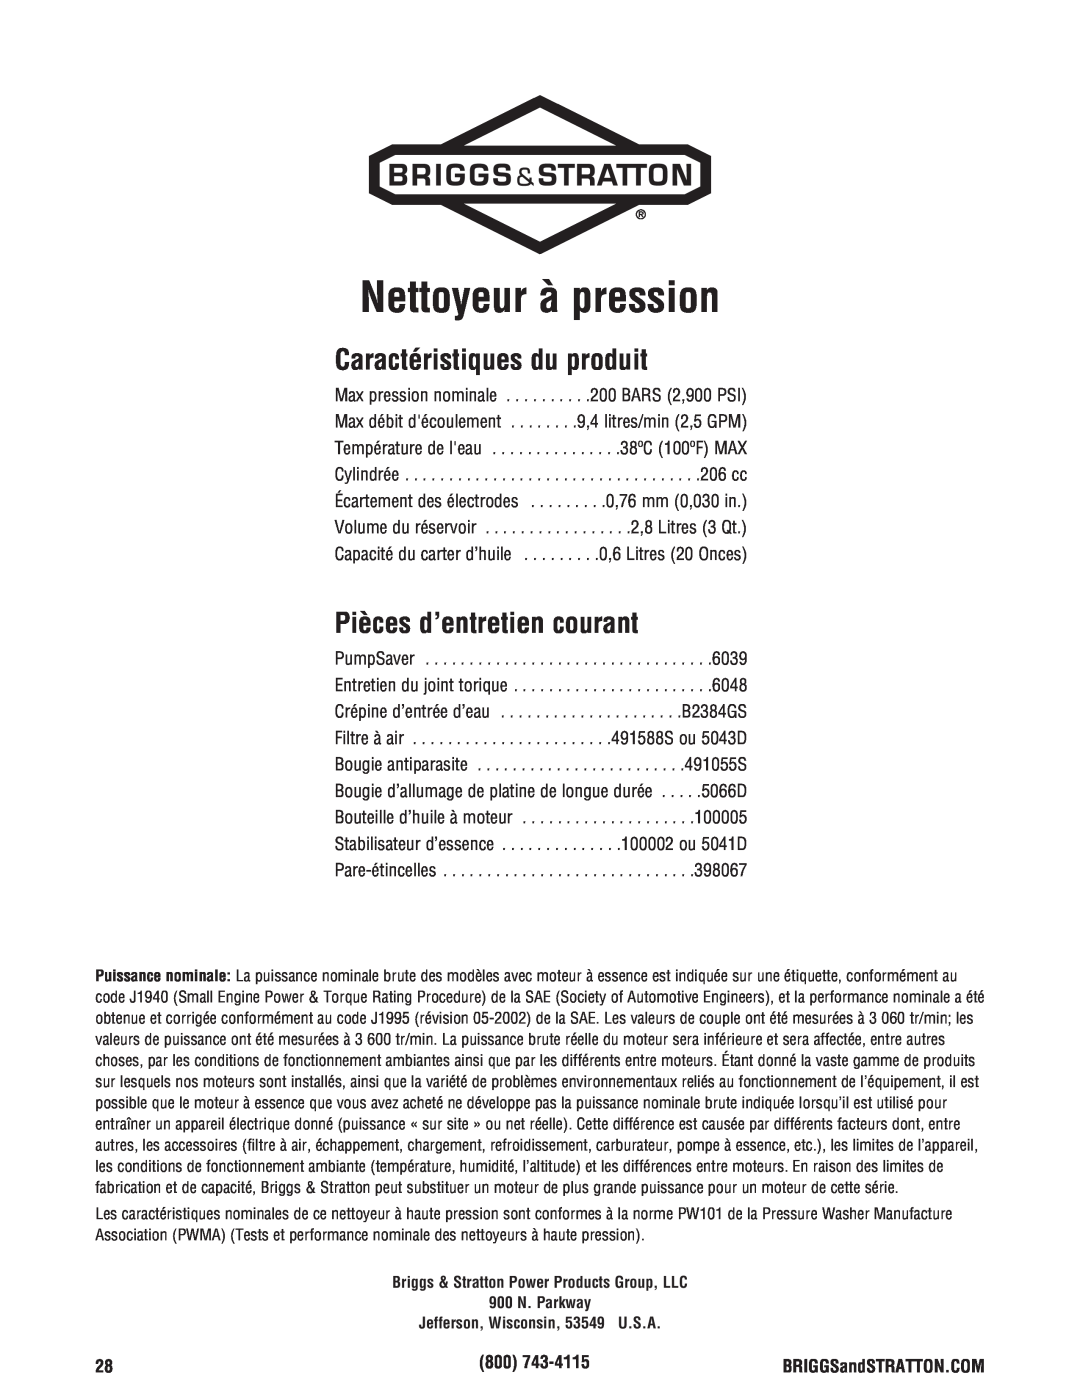 Briggs & Stratton 2900 PSI manual Caractéristiques du produit, Pièces d’entretien courant, Nettoyeur à pression 